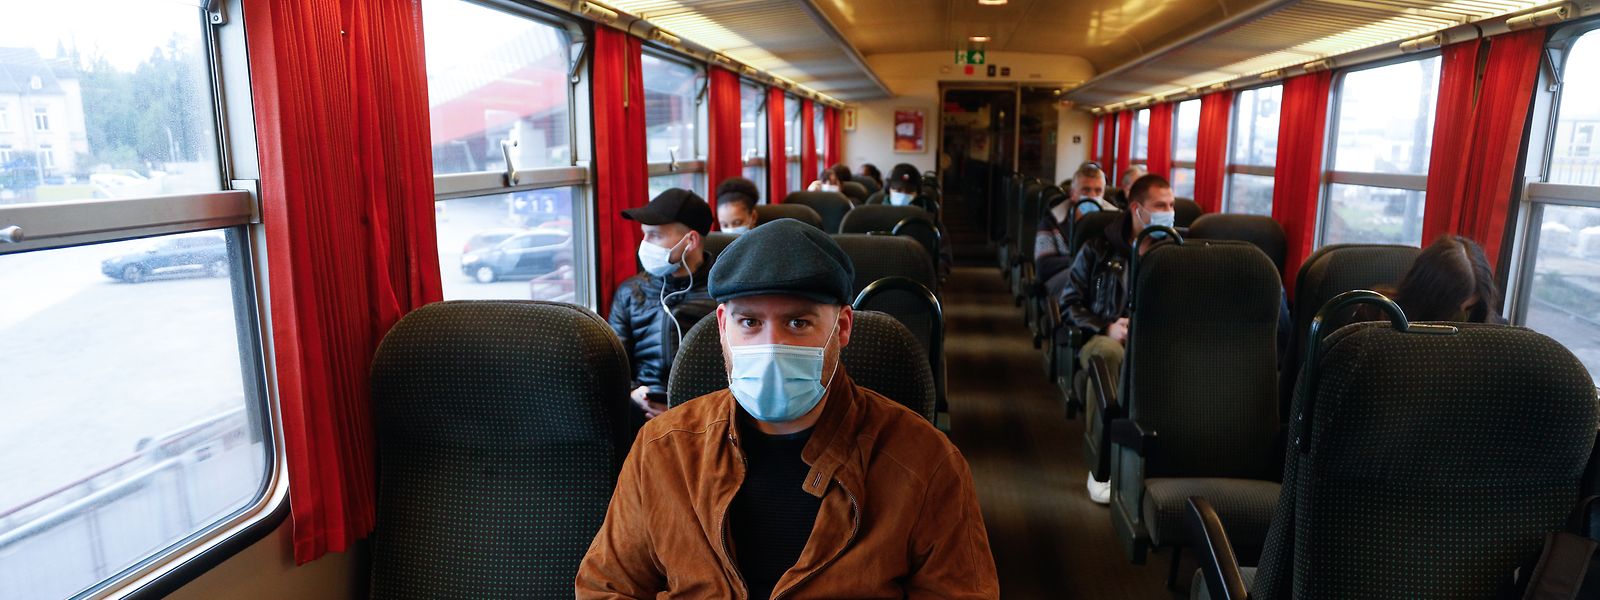 Masque sur le visage, les usagers des transports en commun respectent les consignes de sécurité.